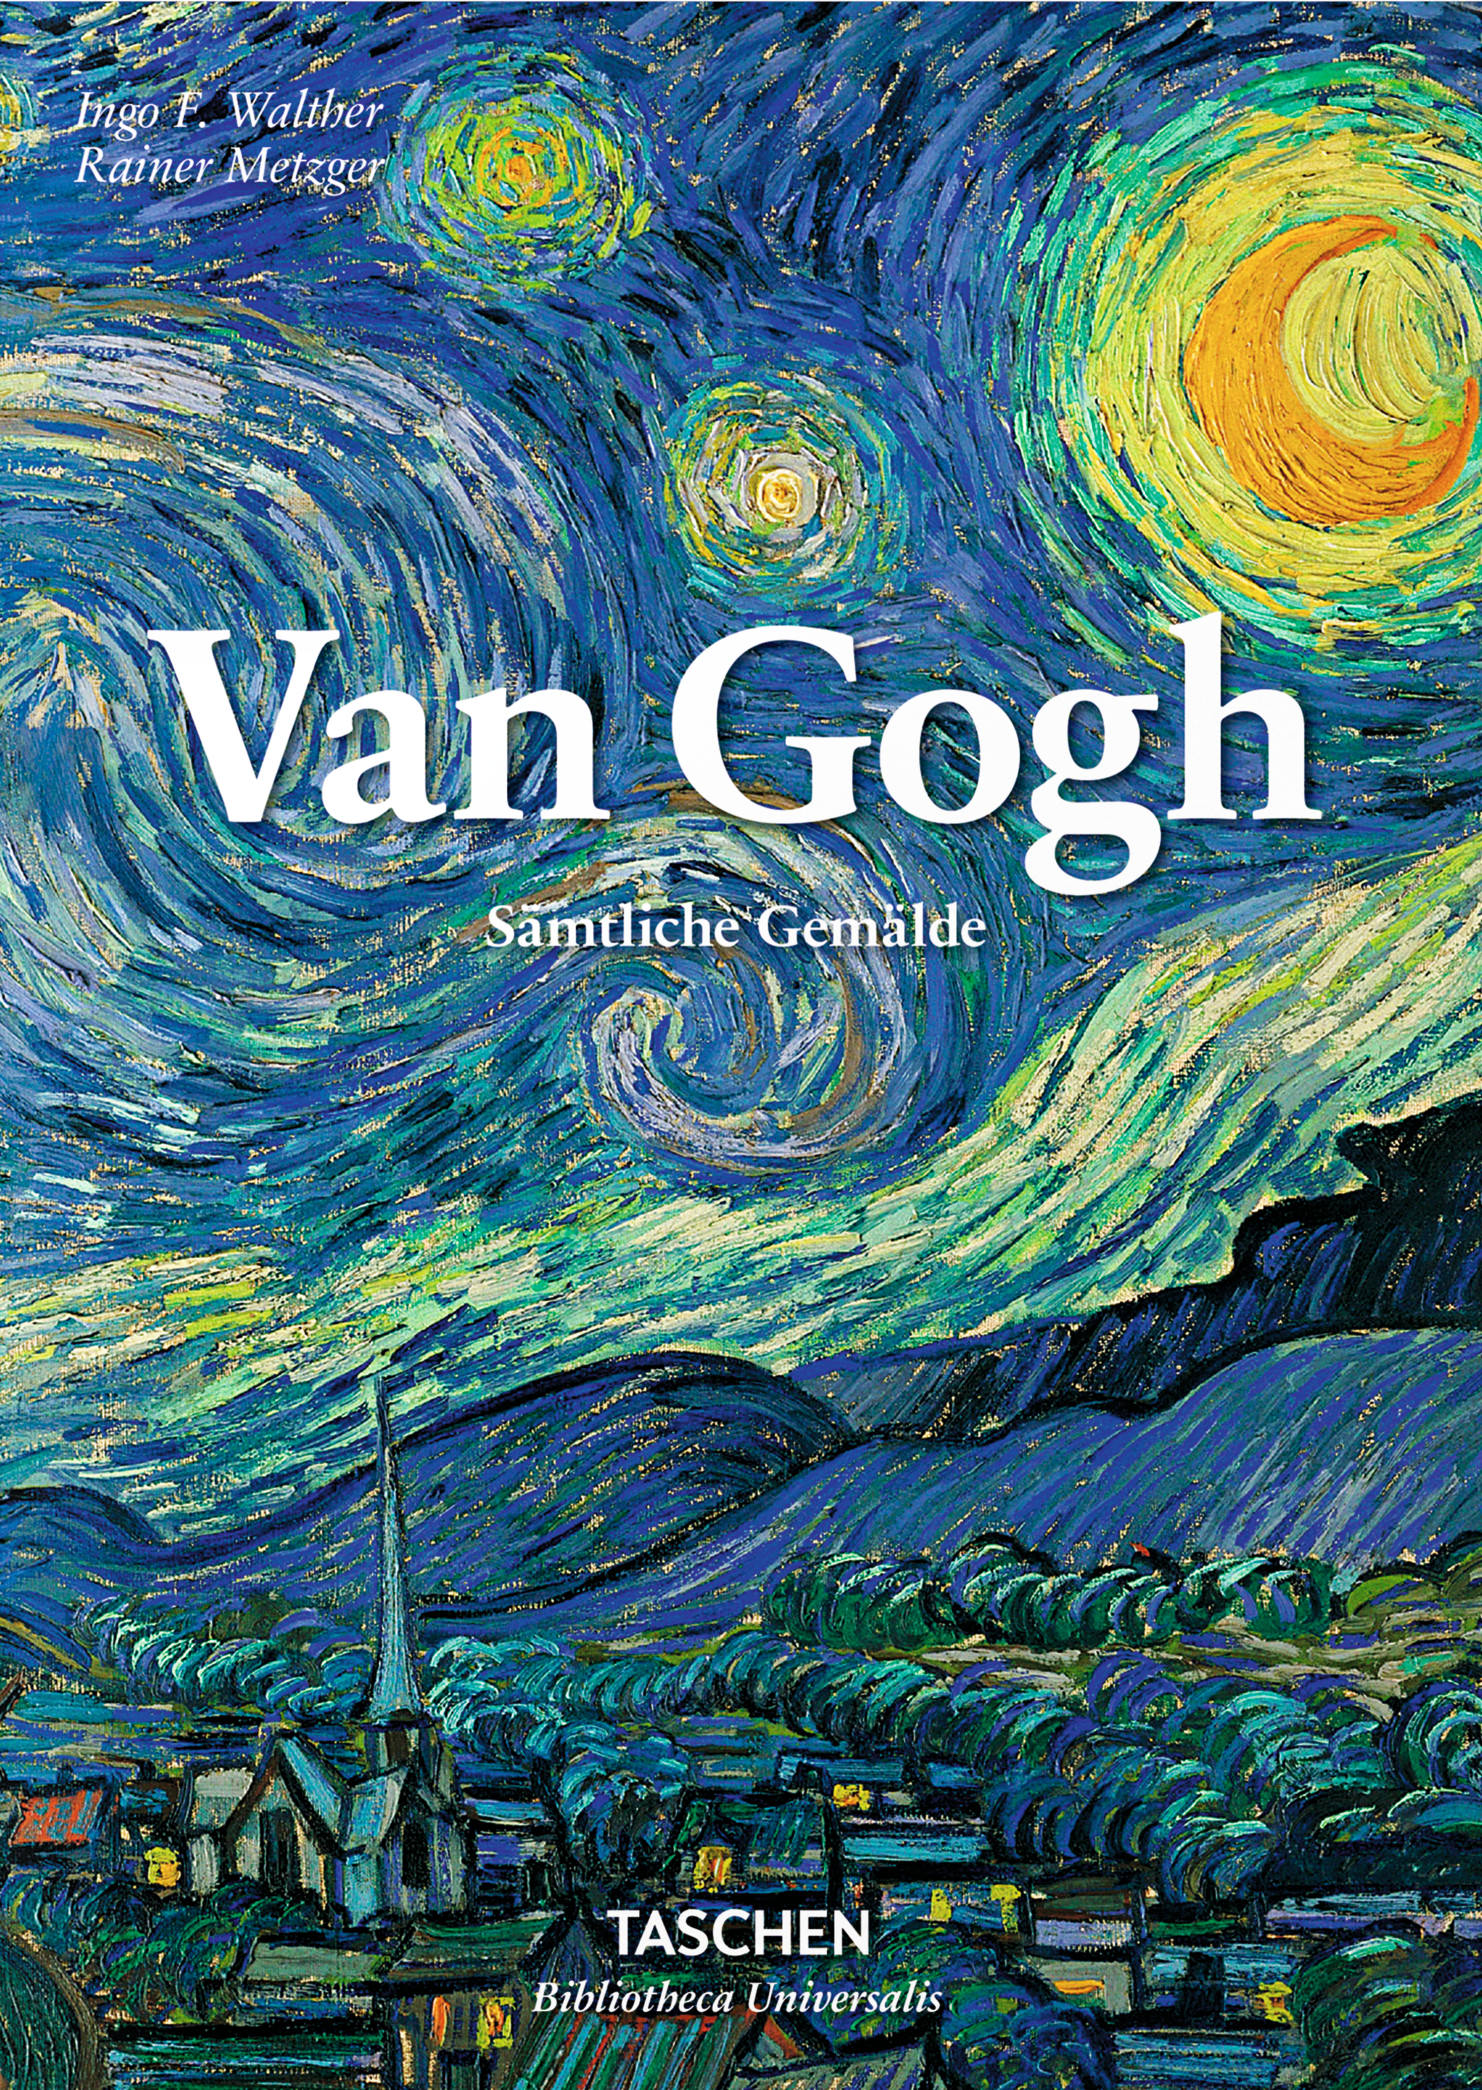 Buchcover: Ingo F. Walther & Rainer Metzger: Vincent van Gogh